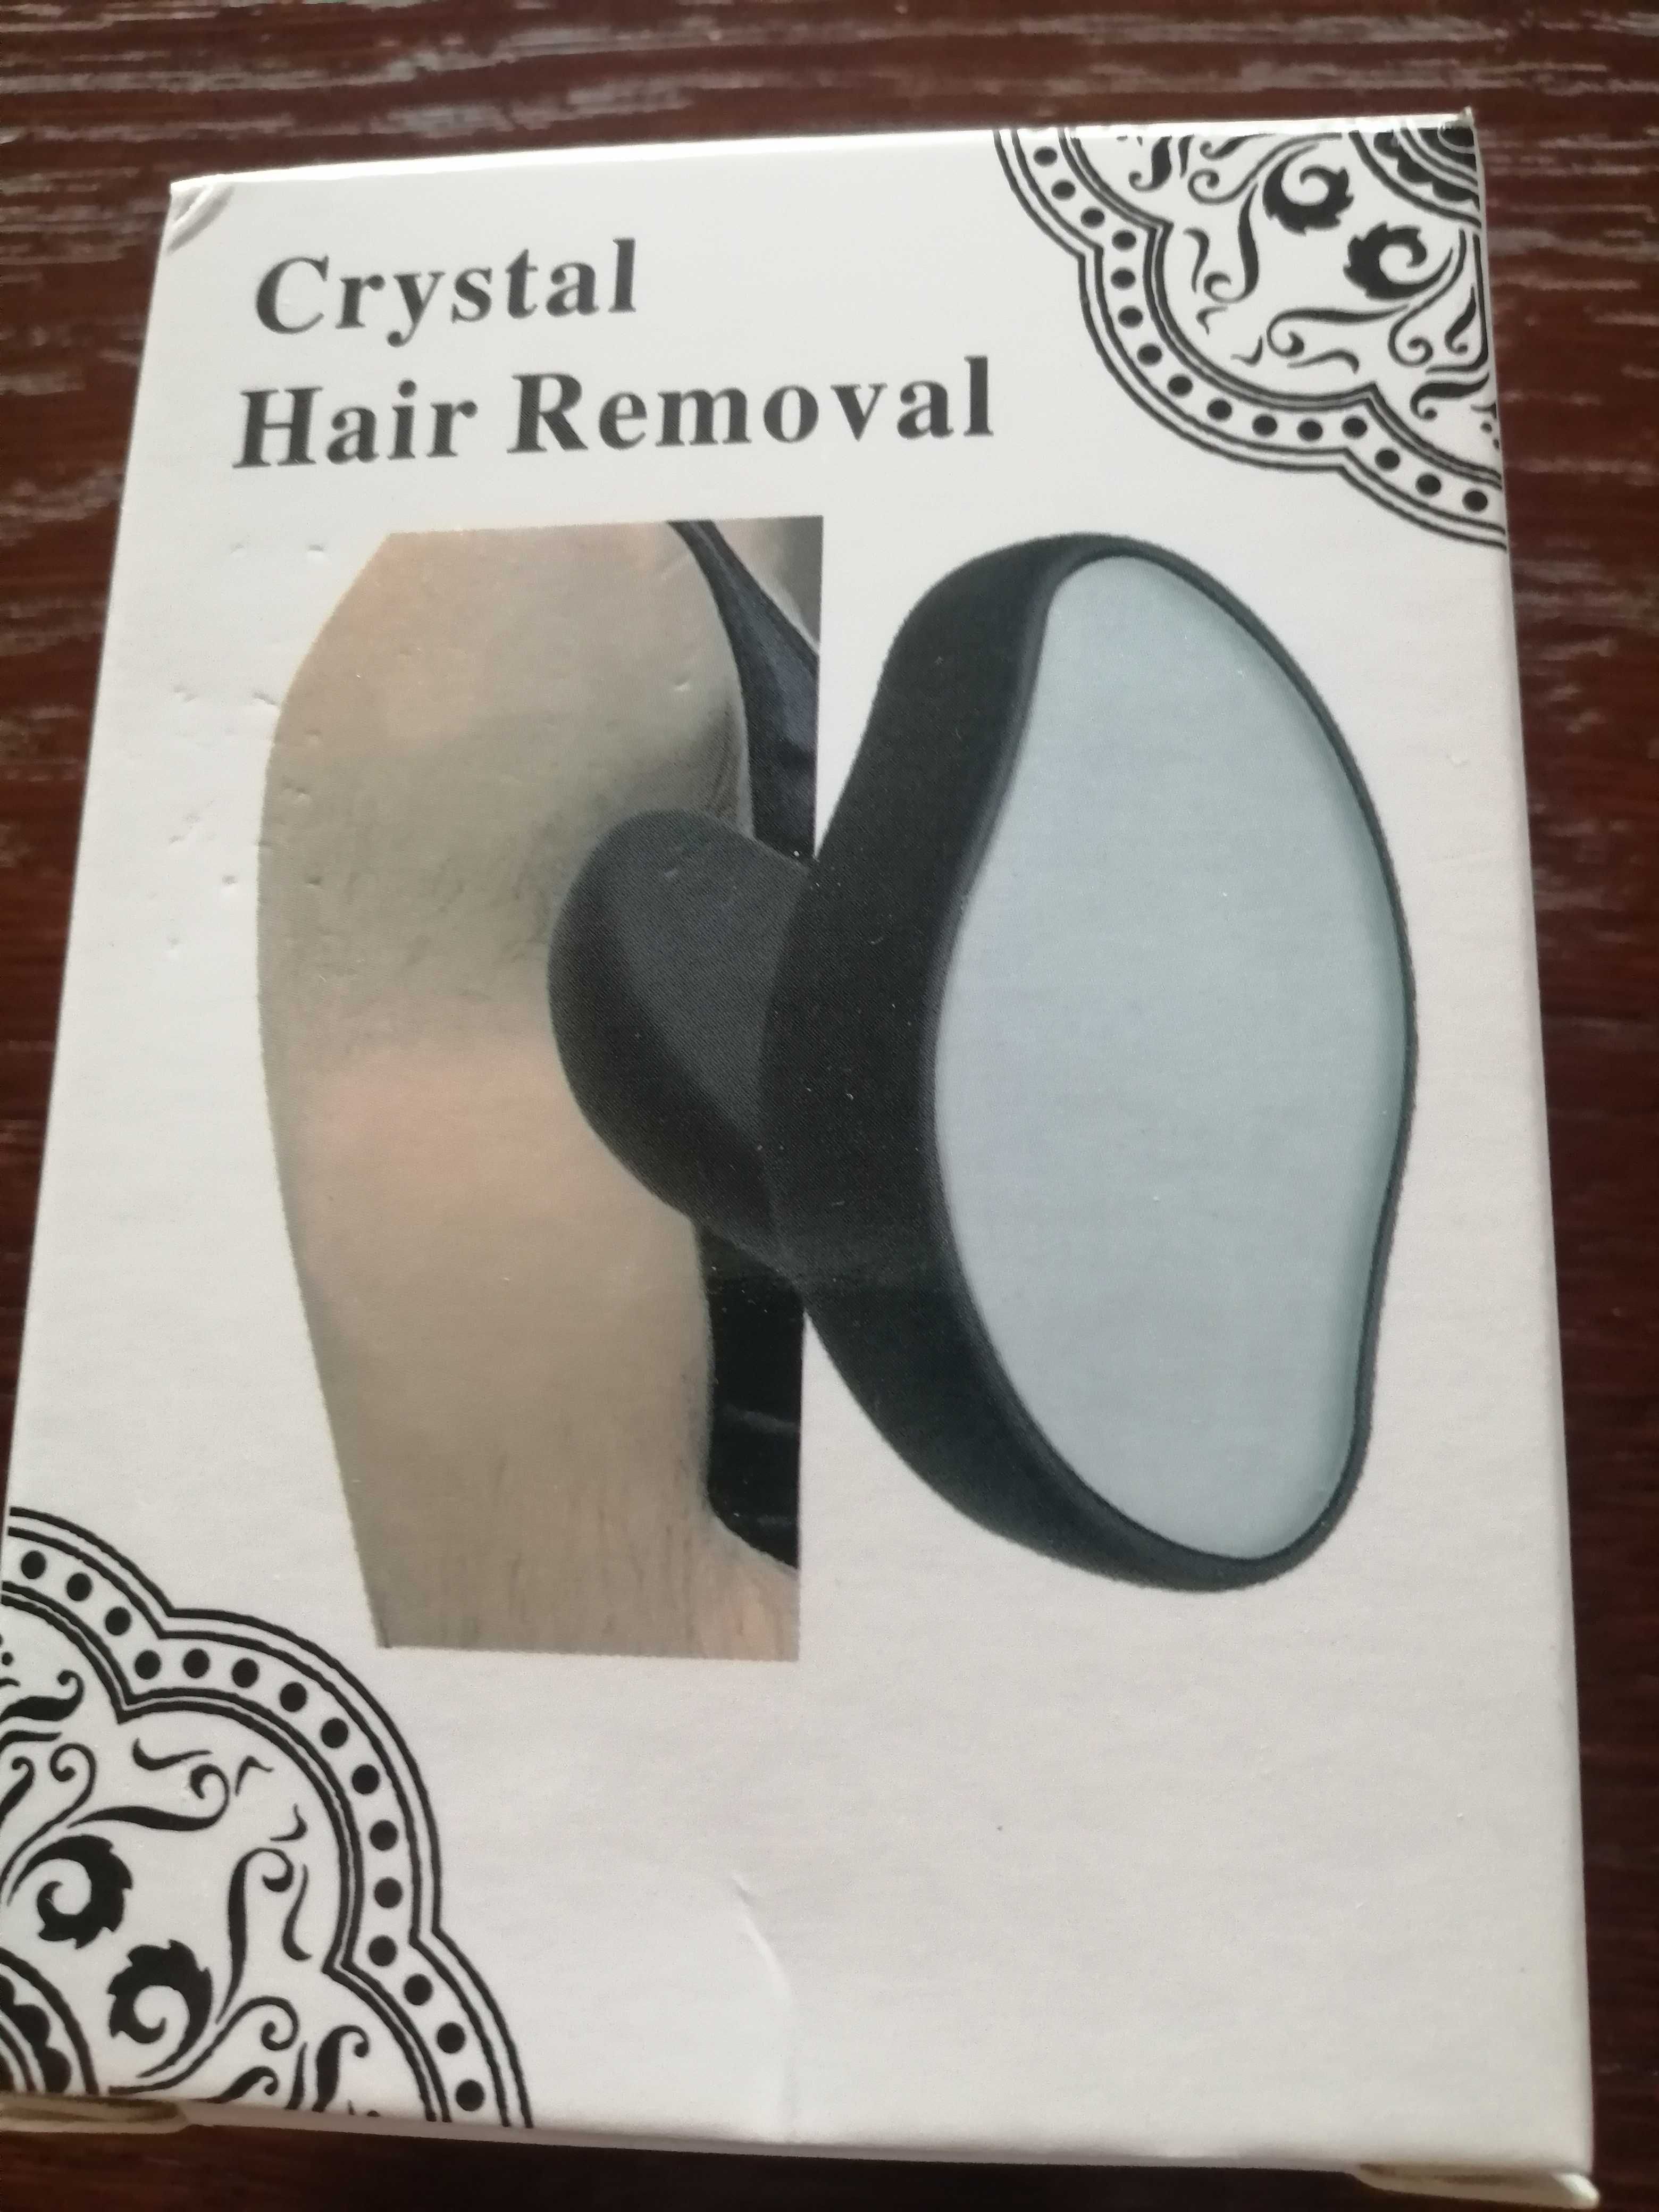 Crystal Hair Removal - przyrząd do usuwania włosów bez bólu